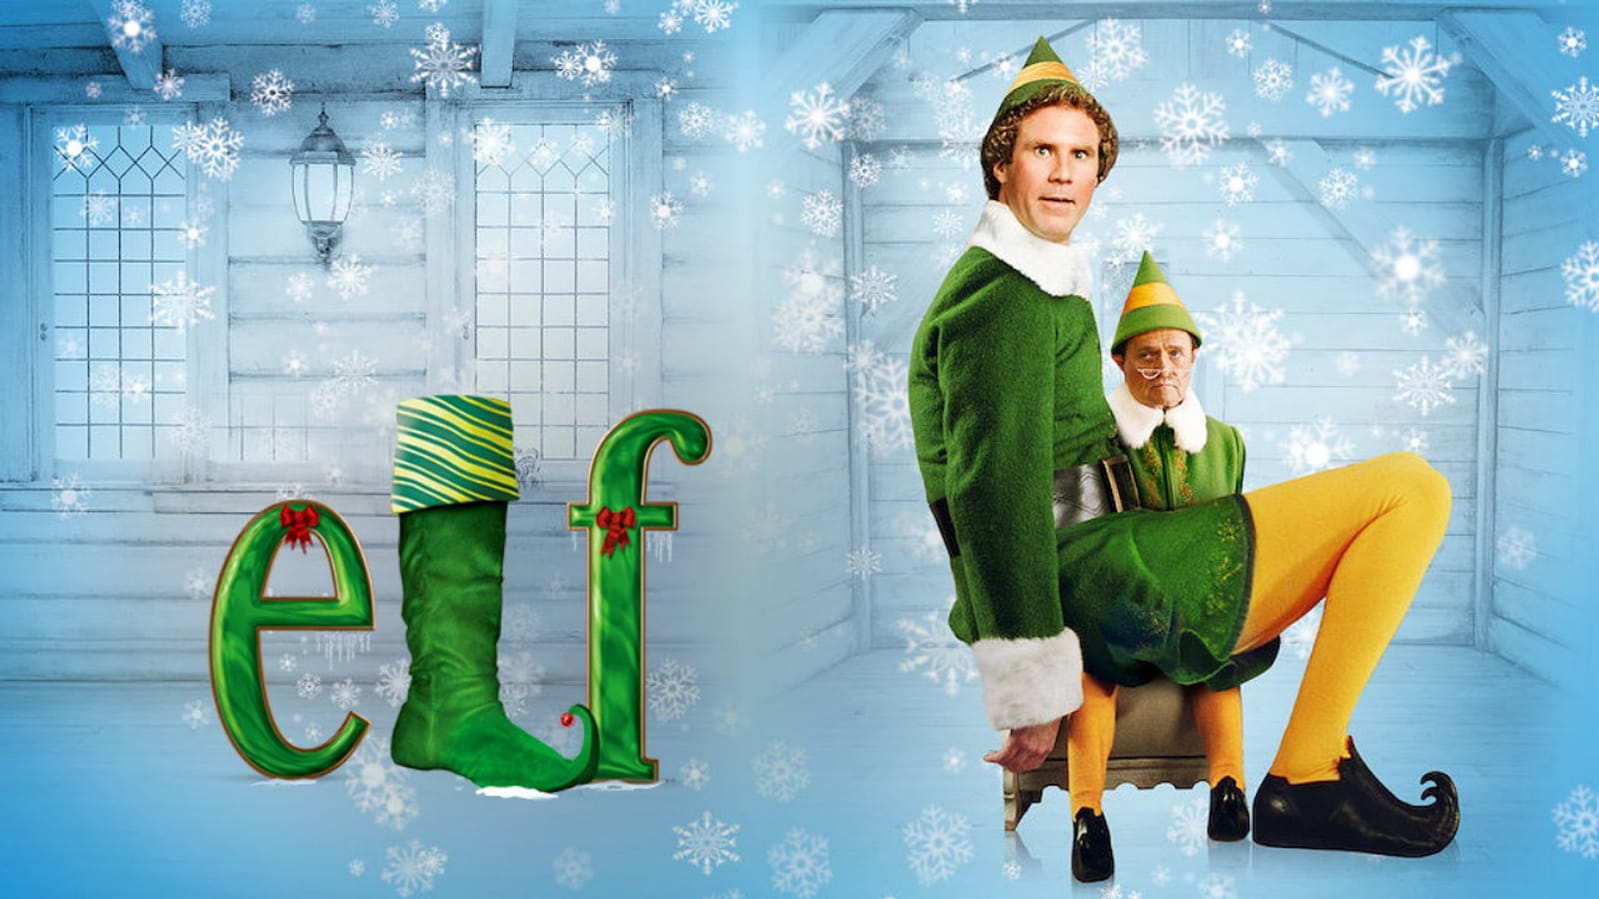 Poster film Elf